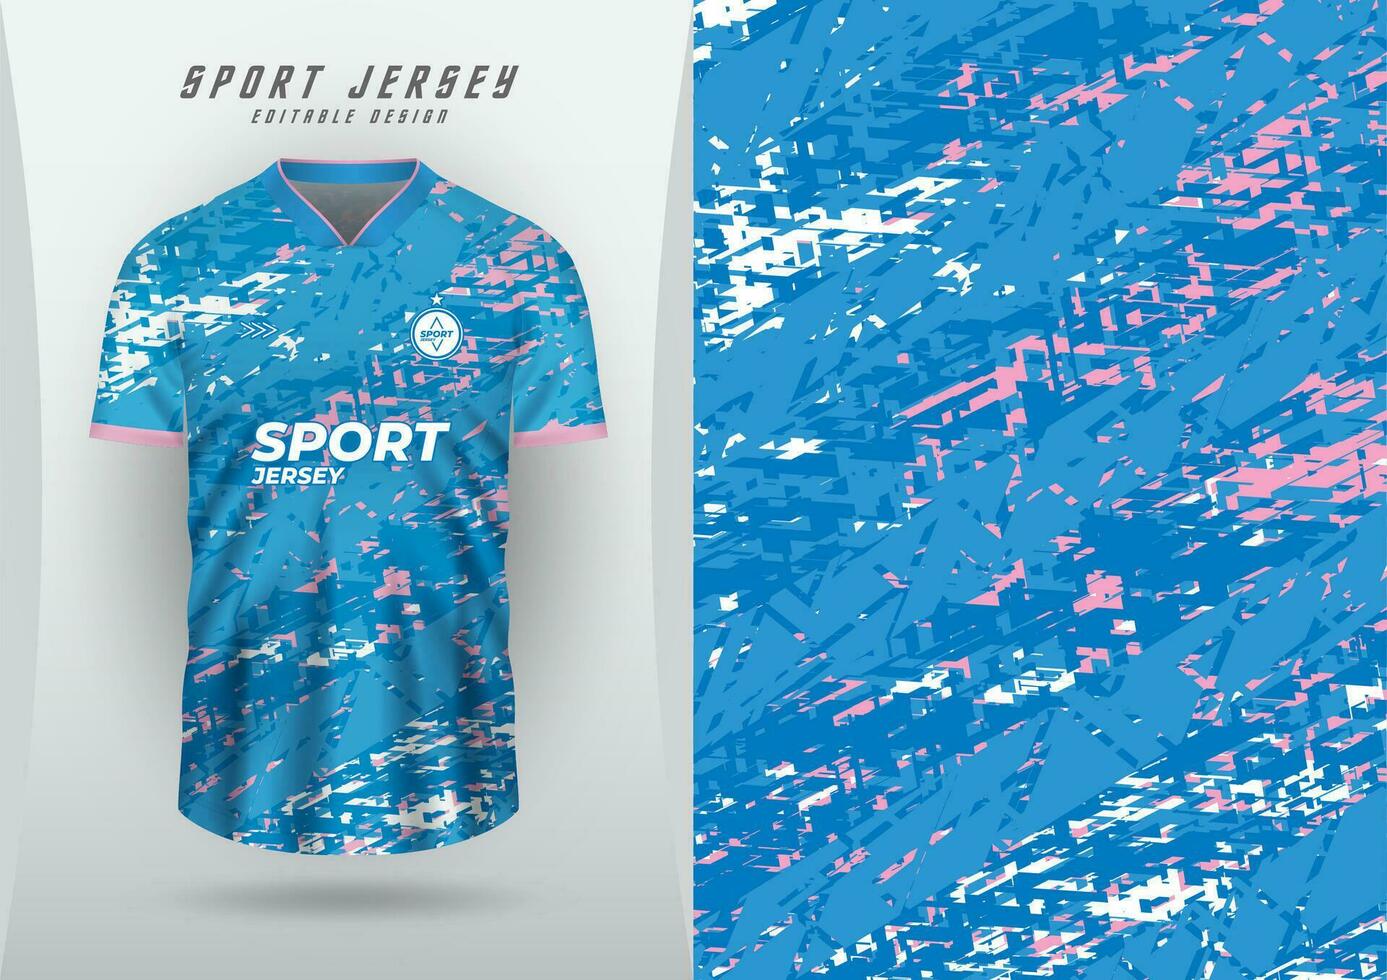 achtergrond voor sport- Jersey, voetbal Jersey, rennen Jersey, racing Jersey, grunge patroon, blauw, roze en wit. vector